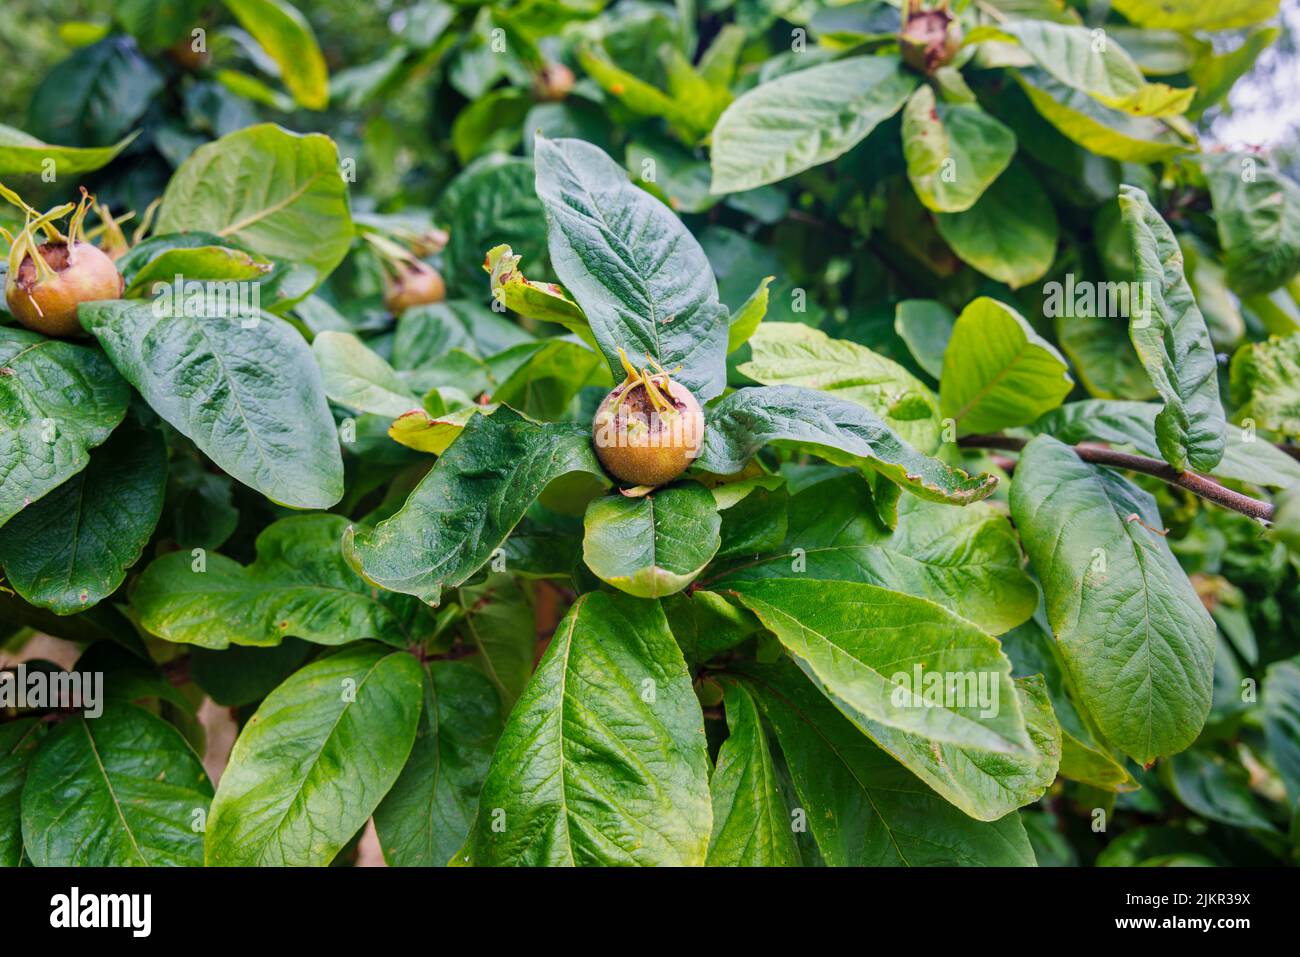 Frutos comestibles del medlar (Mespilus germanica) en verano, creciendo en el árbol y madurando en Exmouth, Dorset, suroeste de Inglaterra Foto de stock